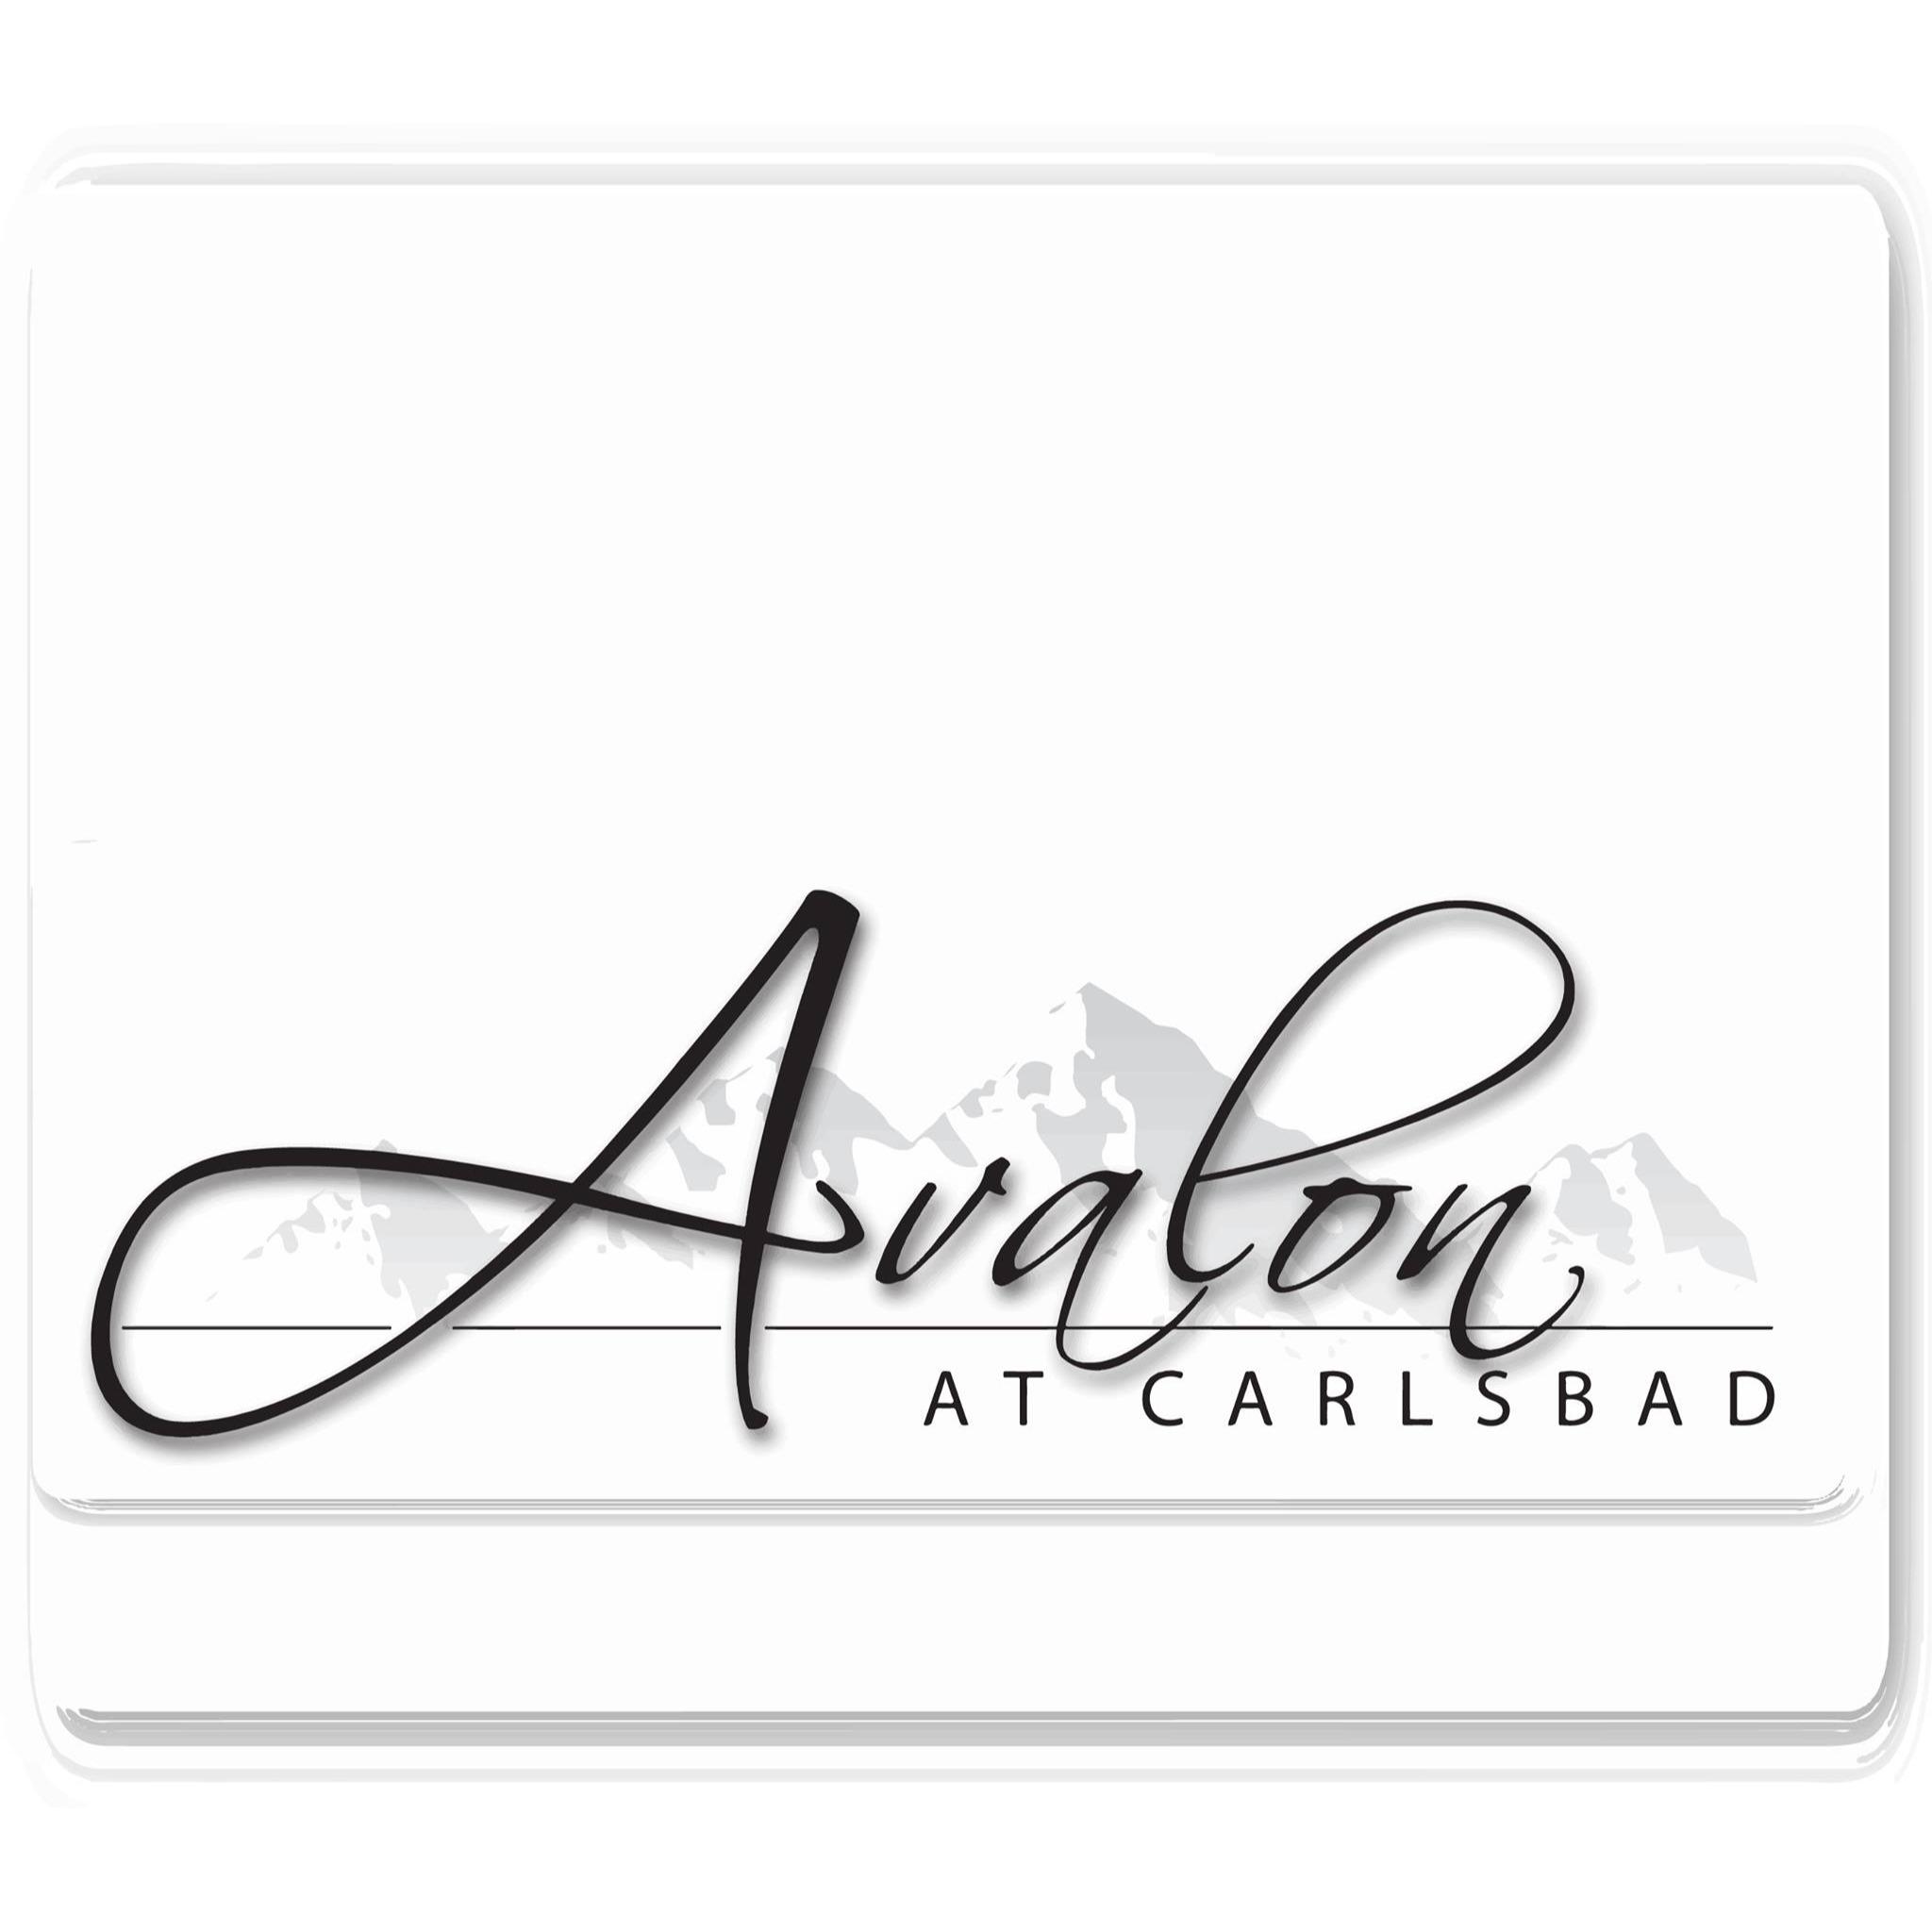 Avalon at Carlsbad - Carlsbad, NM 88220 - (575)741-2417 | ShowMeLocal.com